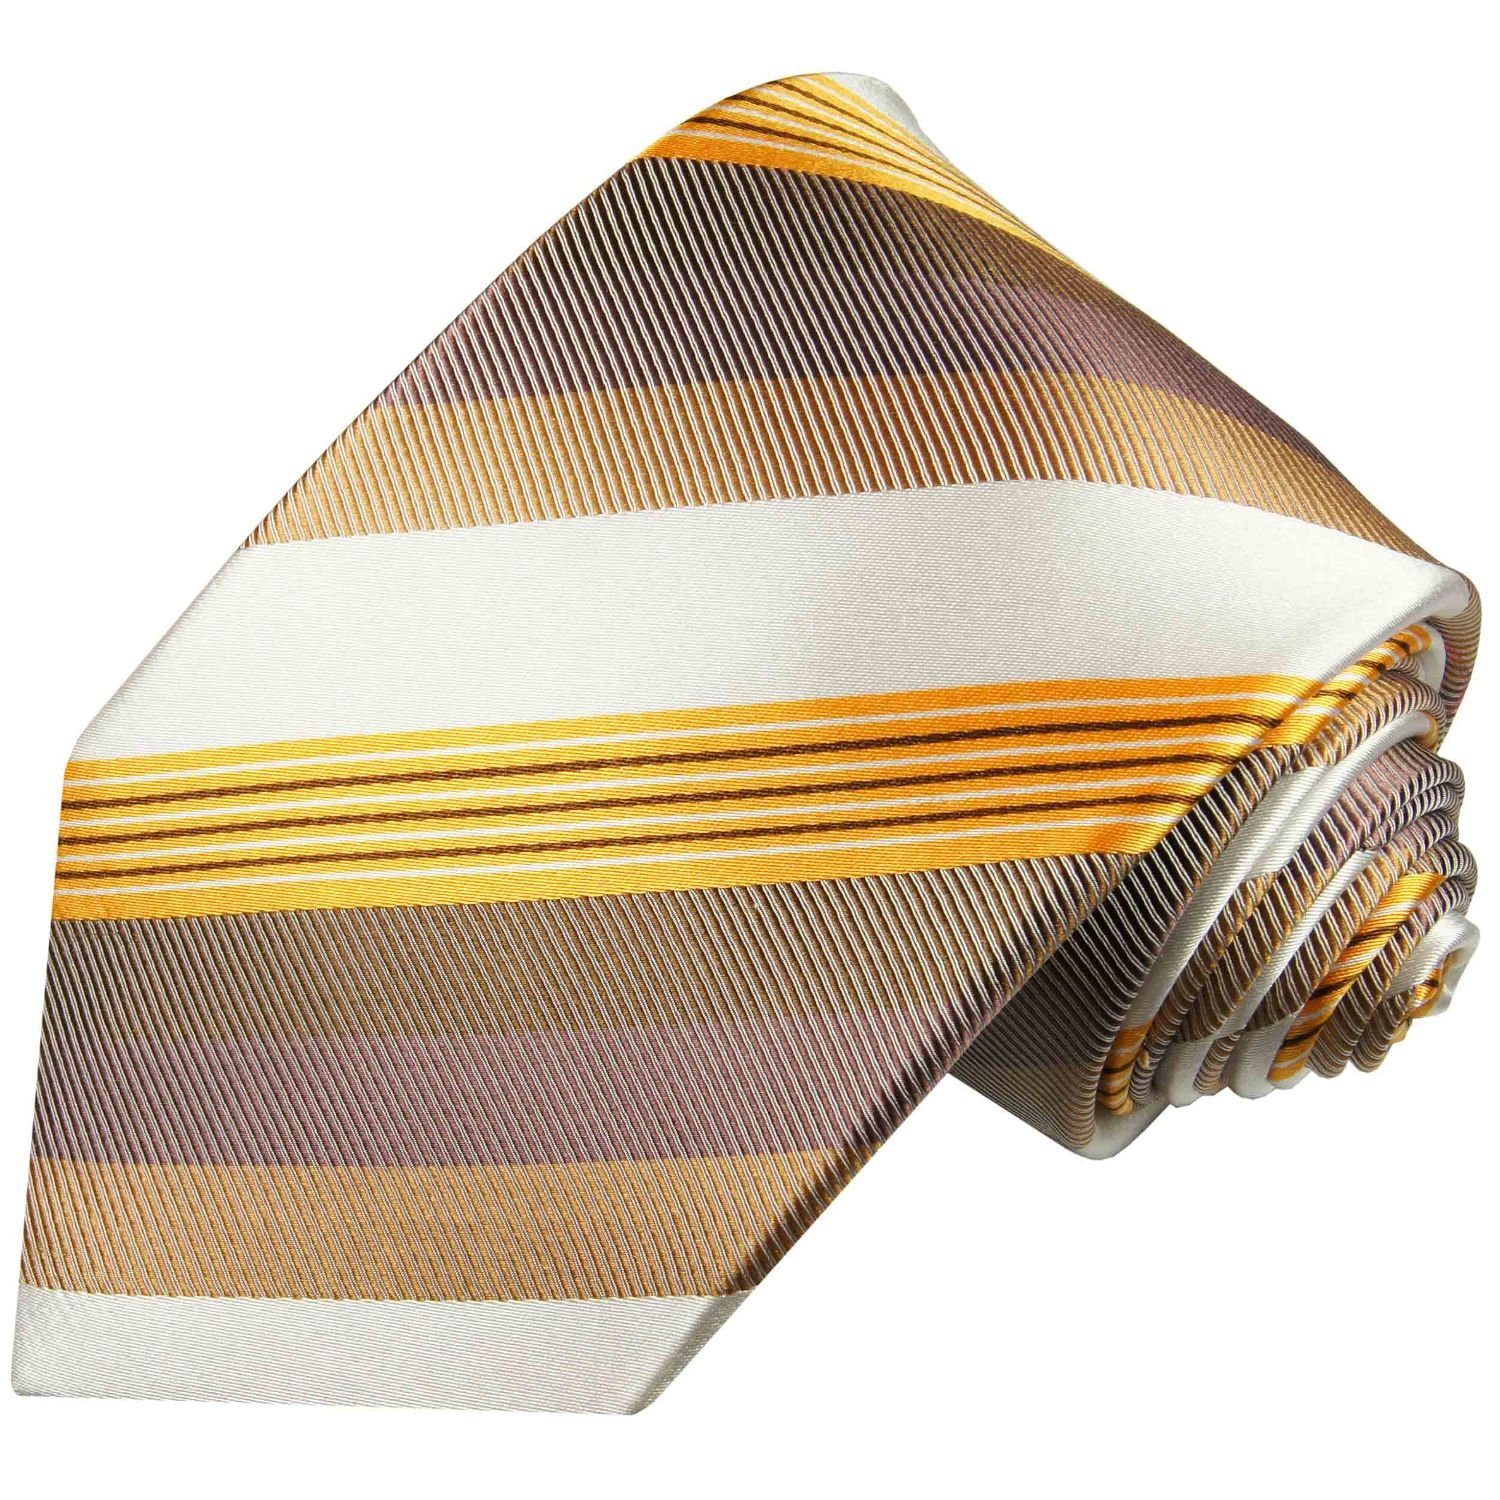 Paul Malone Schmal Seide gestreift 637 Herren (6cm), 100% Schlips modern Krawatte Designer gold braun Seidenkrawatte